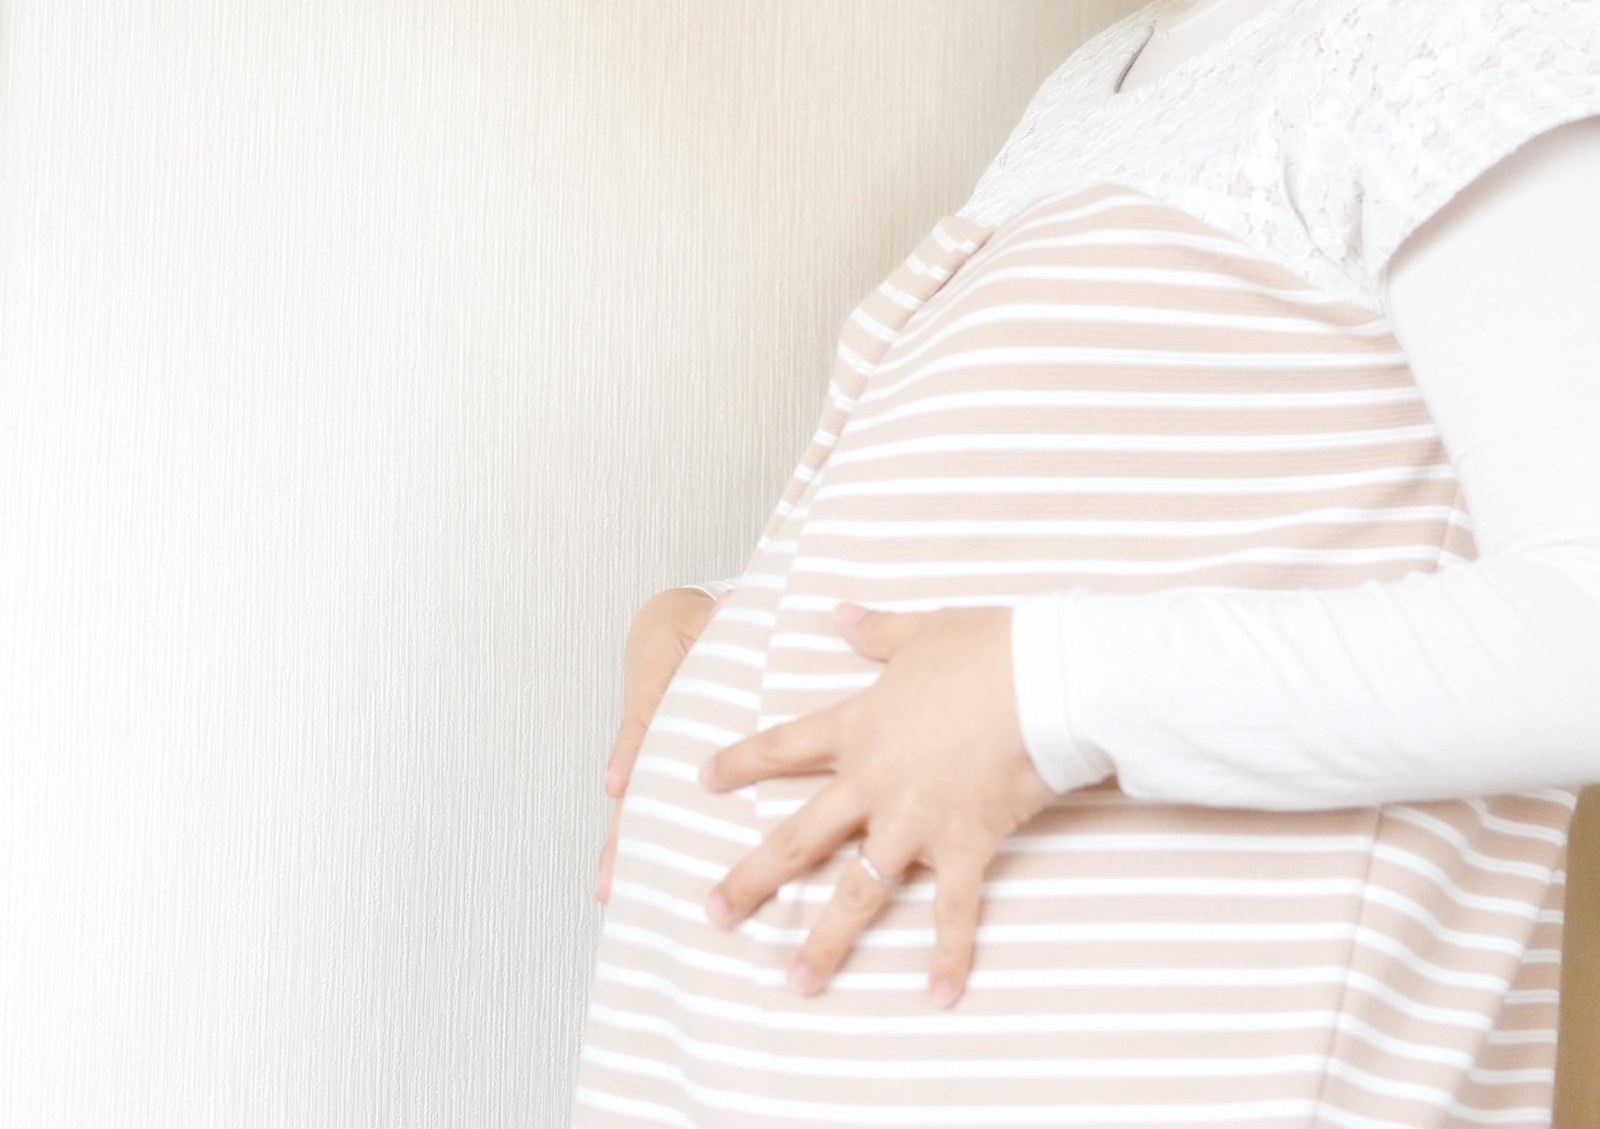 妊娠中に飲む風邪薬は胎児に影響あるかと葉酸も飲めるか